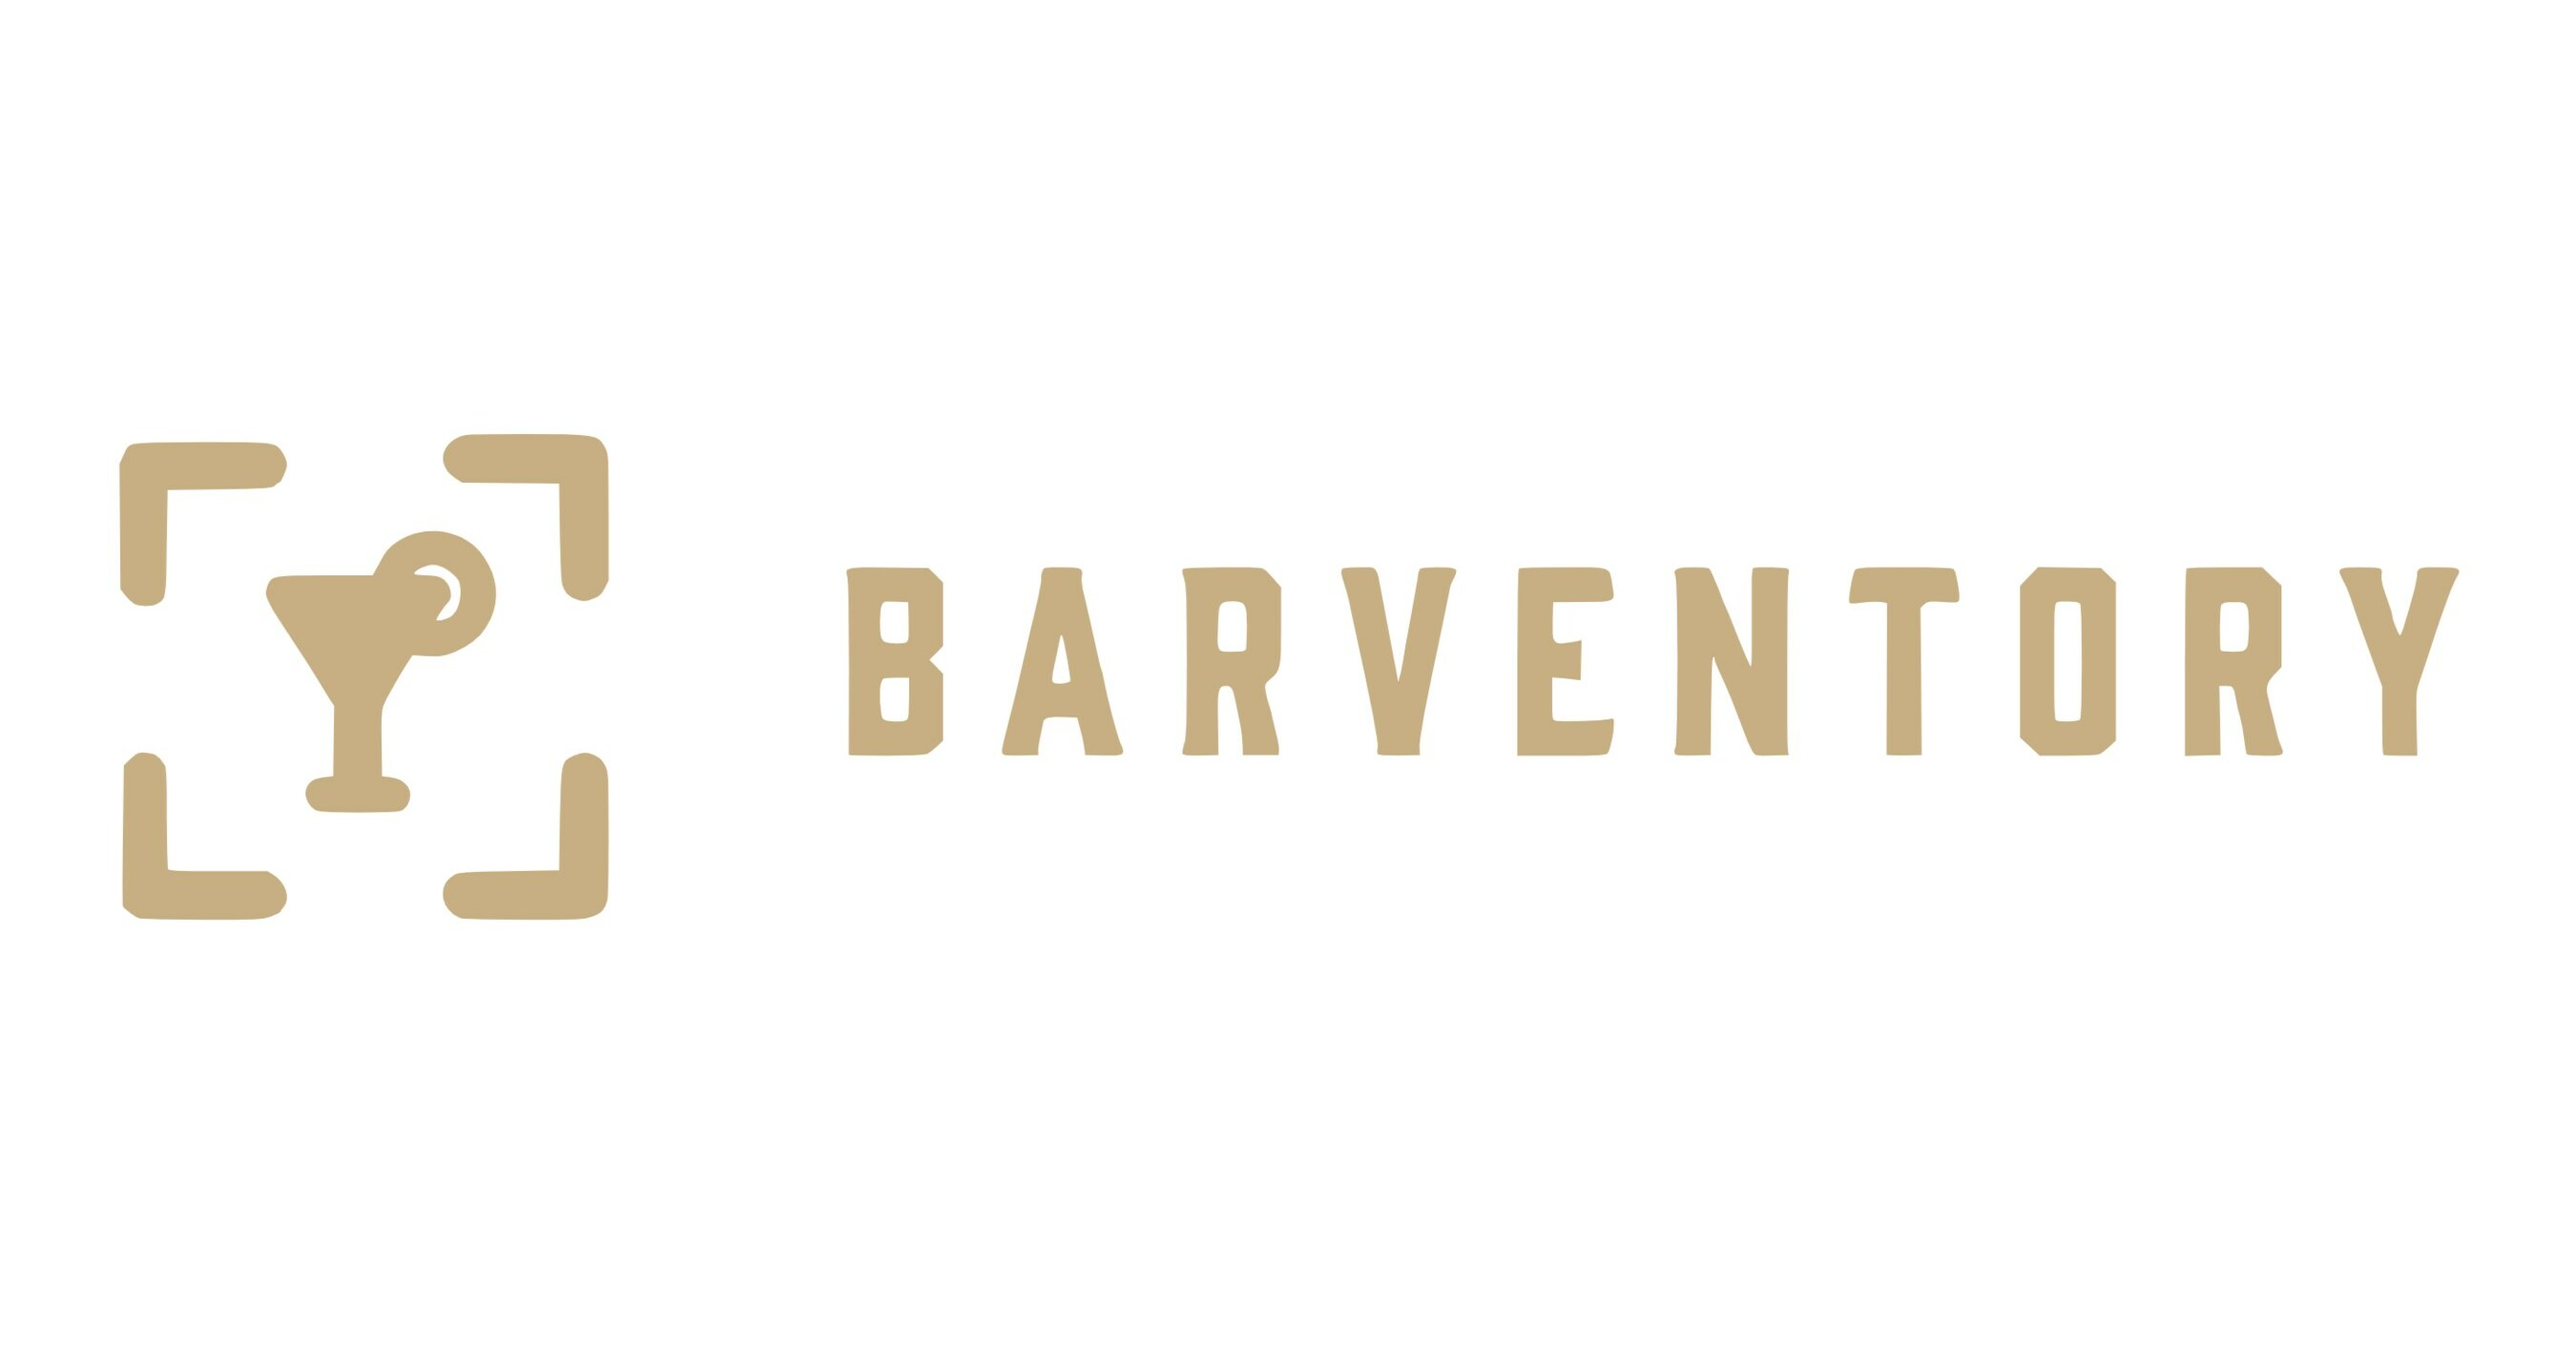 Barventory lanza sistemas de gestión de inventario de próxima generación para bares y restaurantes